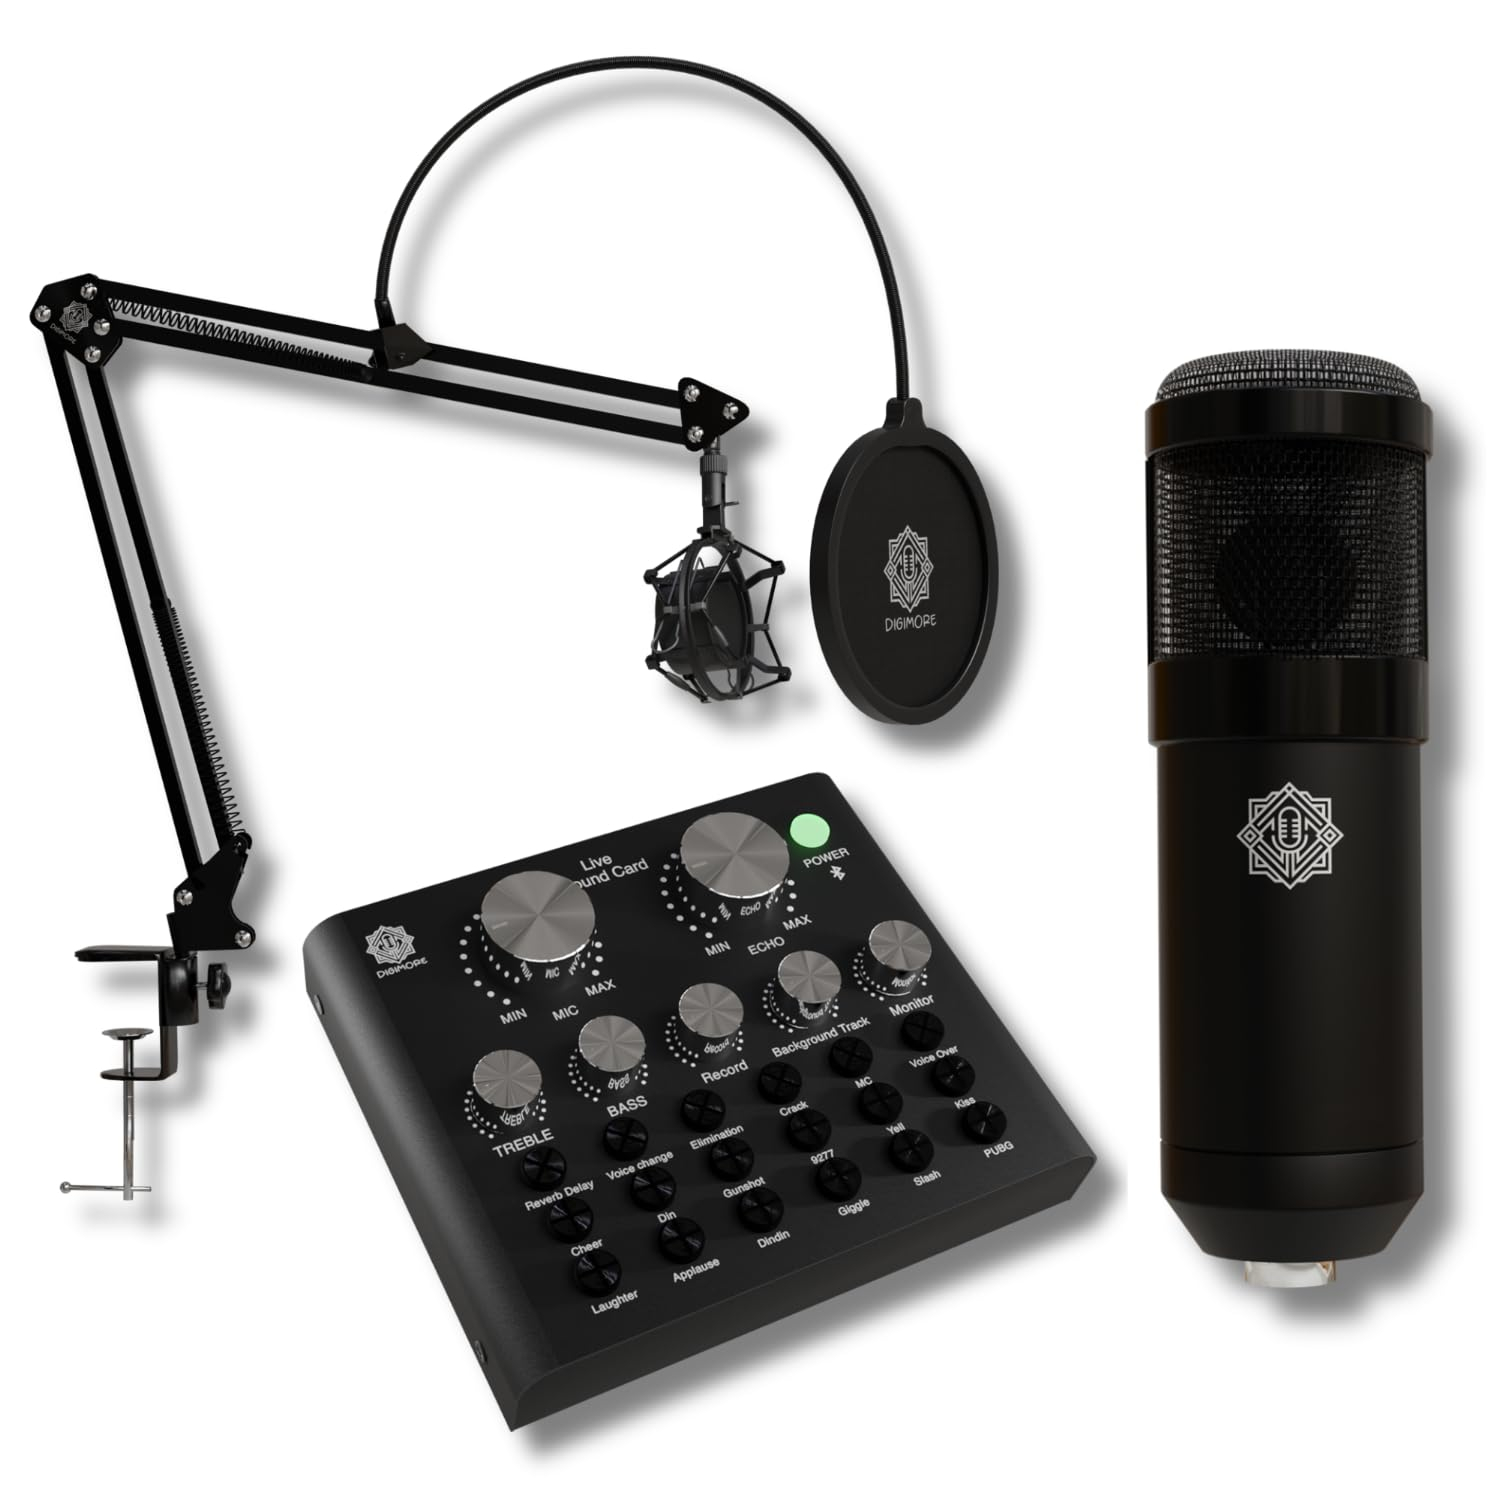 DIGIMORE D-430 Condenser Microphone Kit Podcast Equipment Bundle with V8 Sound Card Set, Adjustable Scissor Arm Stand Shock